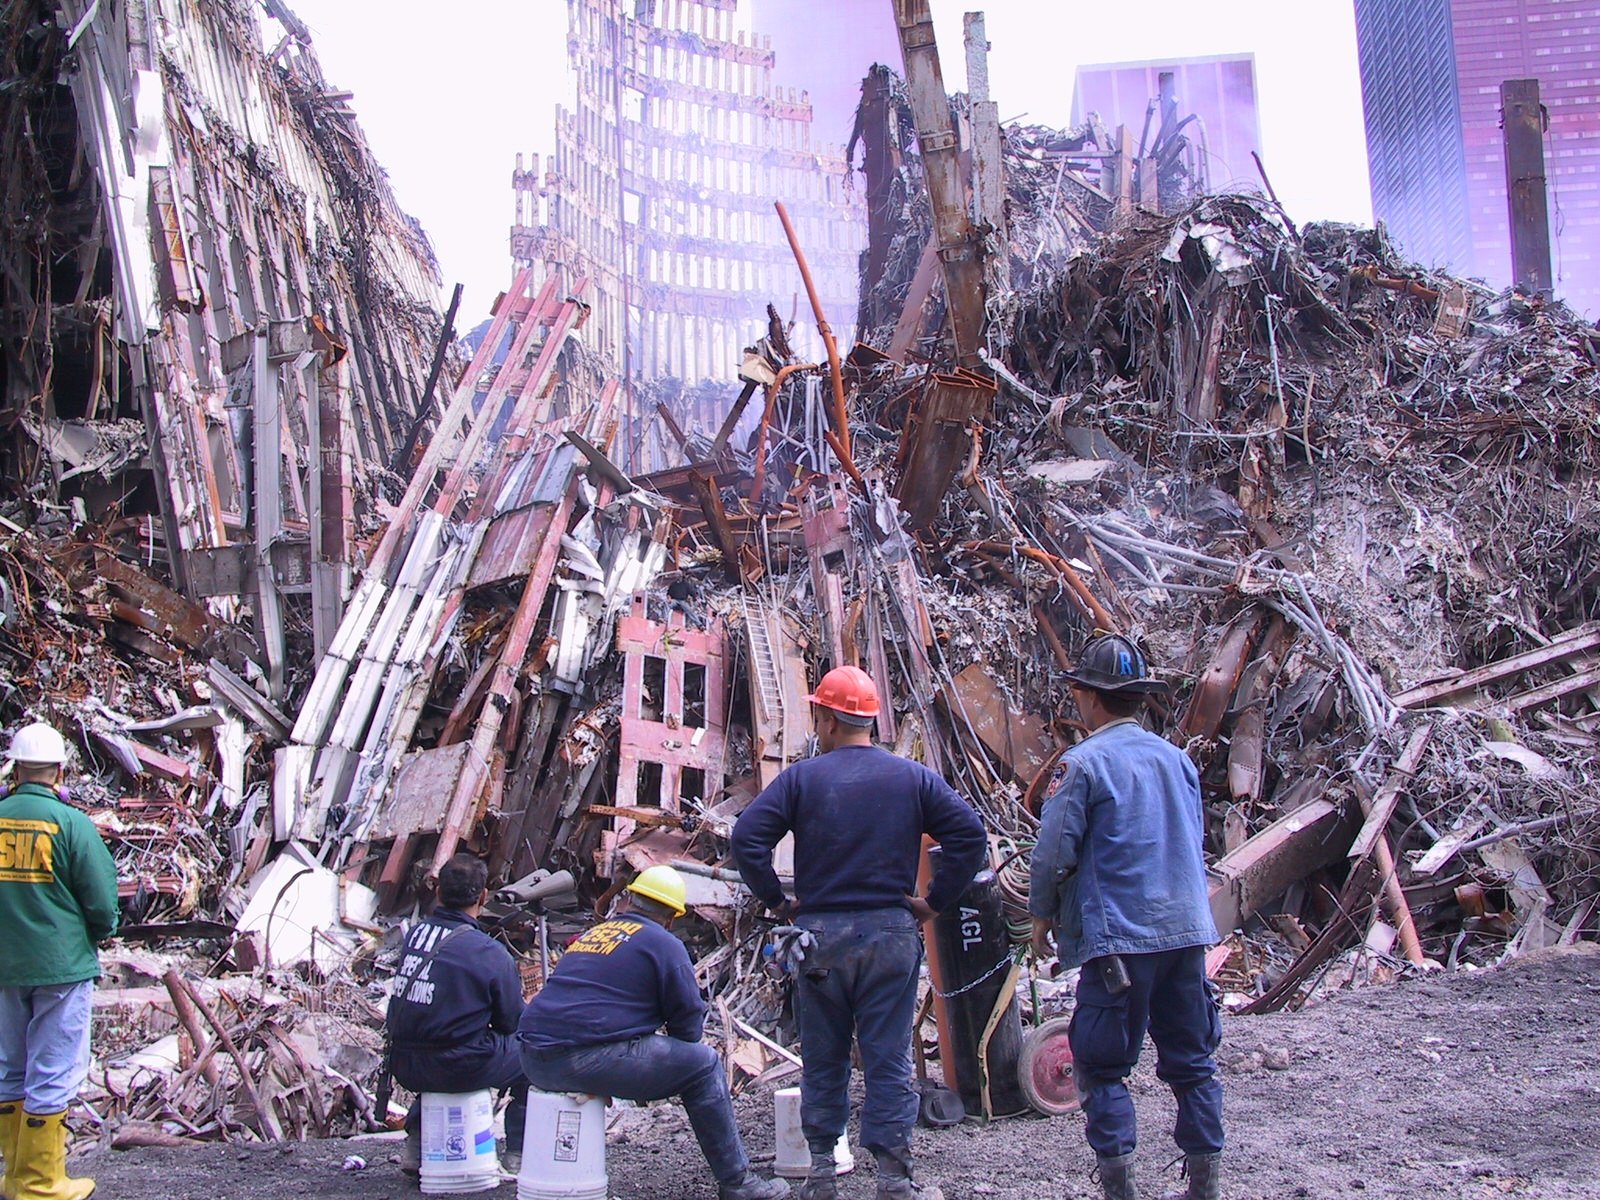 Количество жертв теракта 11 сентября. Башни-Близнецы 11 сентября 2001. Жертвы 11 сентября 2001 года. Теракт 11 сентября башни. Башни Близнецы 11 сентября жертвы.